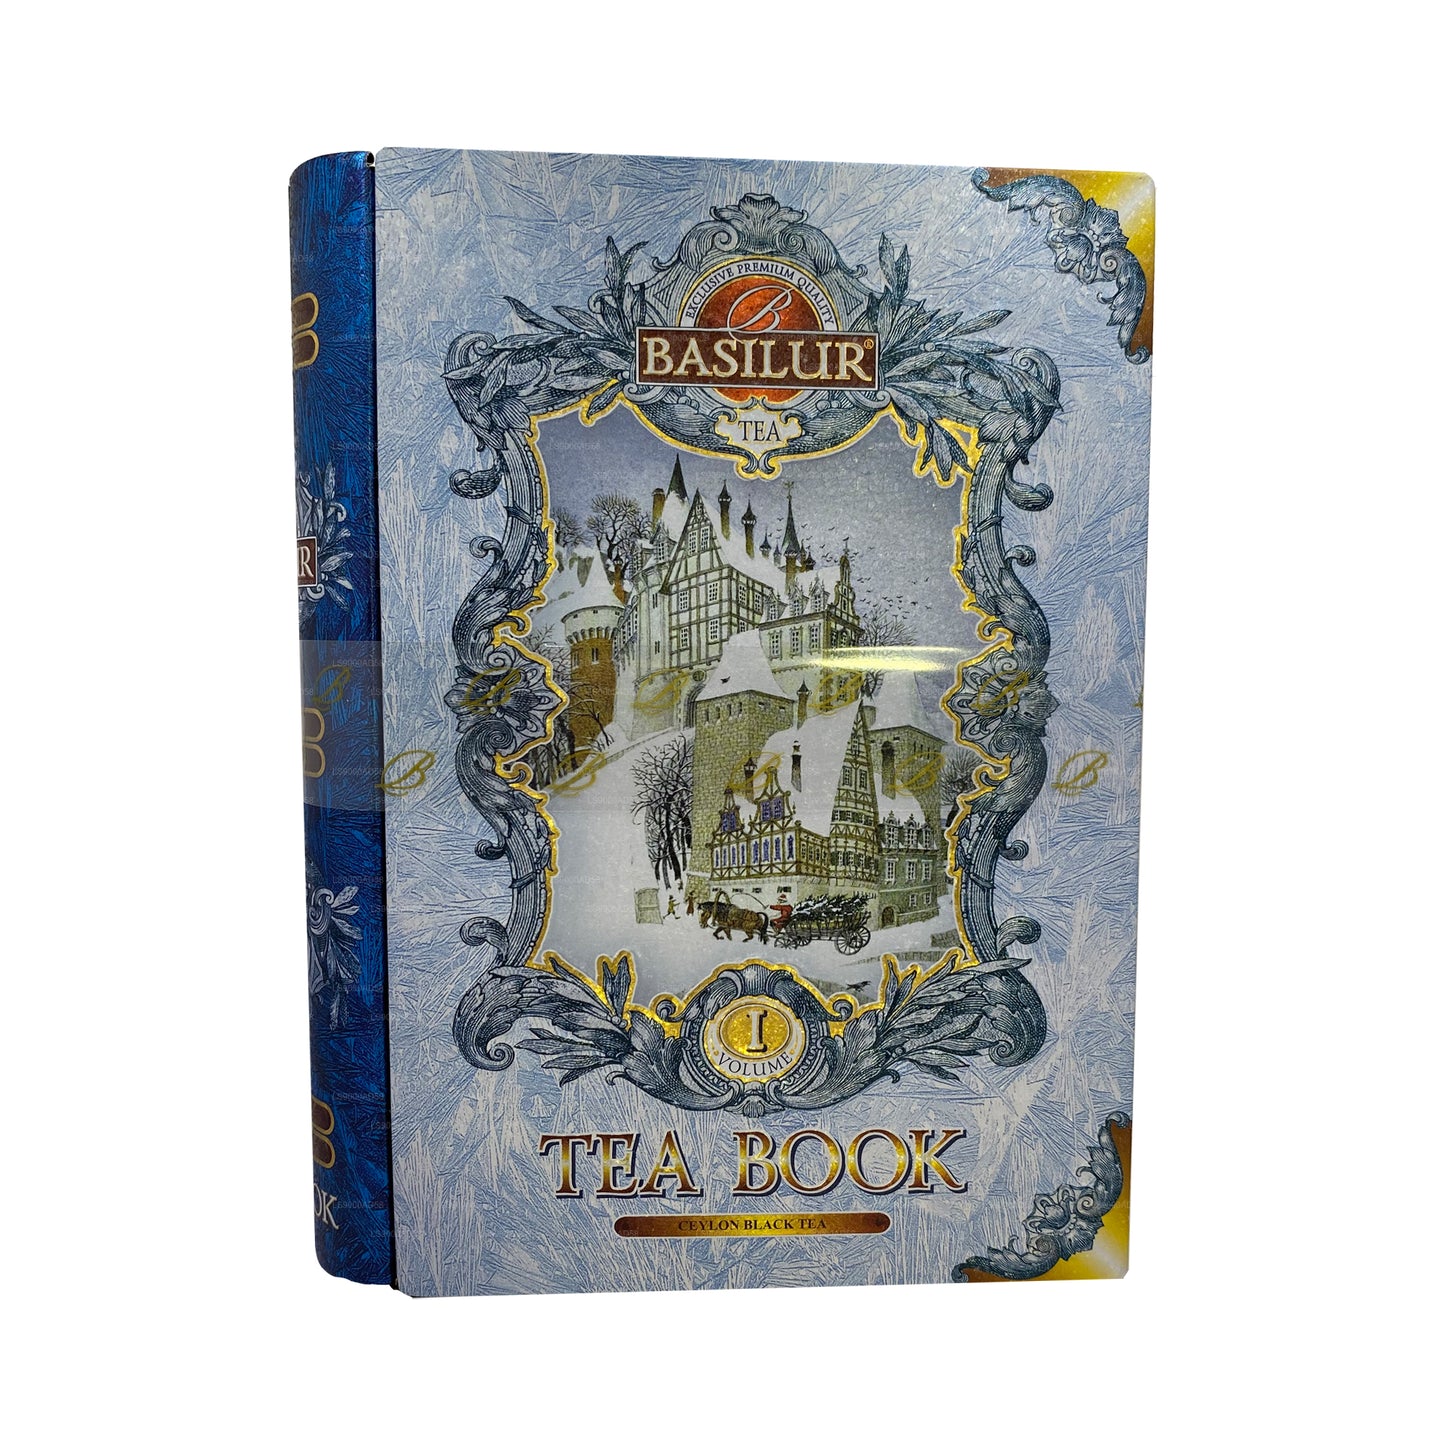 كتاب شاي الشتاء من باسيلور الأول (100 غرام)